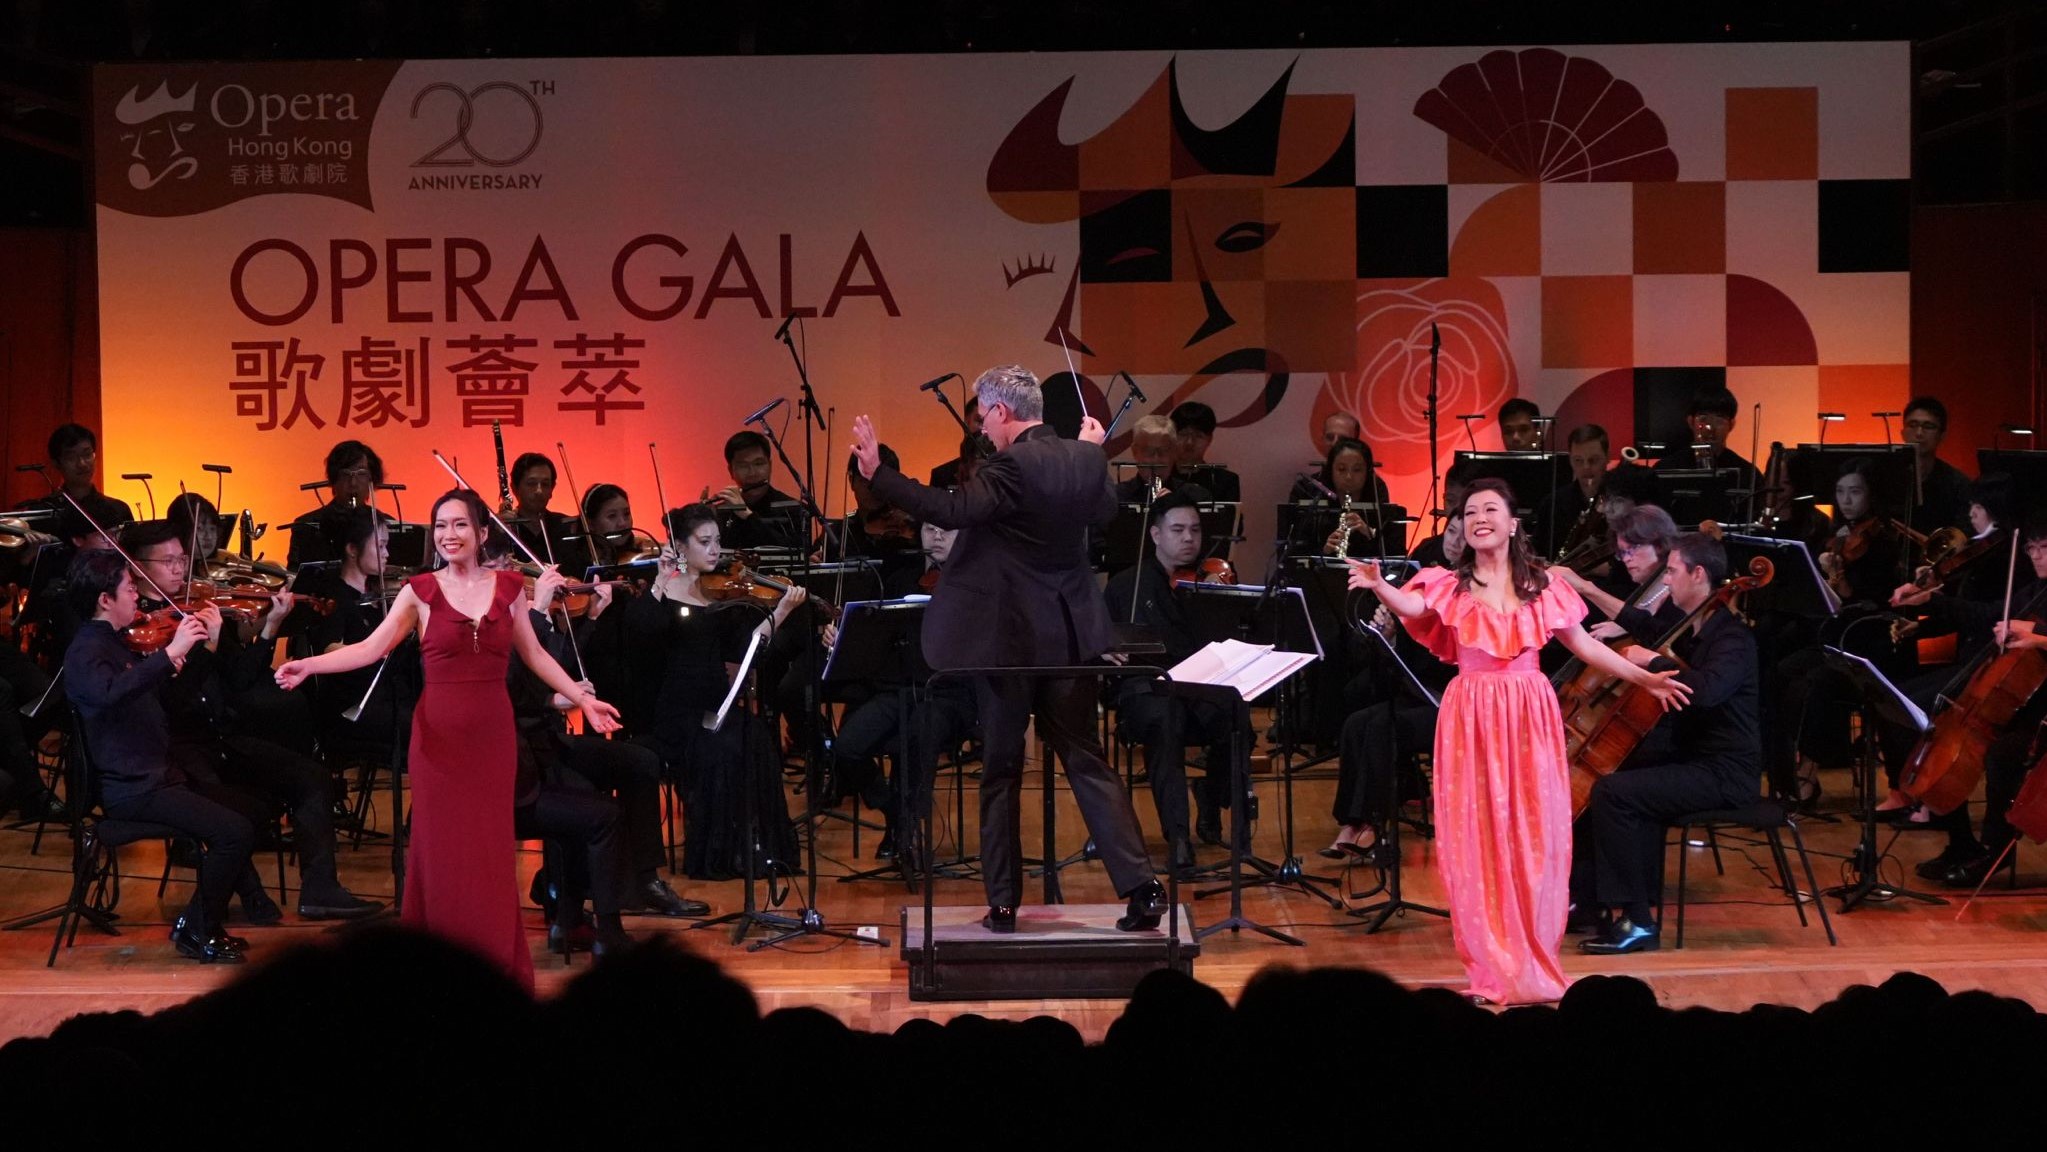 ​香港歌劇院雙十年華 激情澎湃Opera Gala